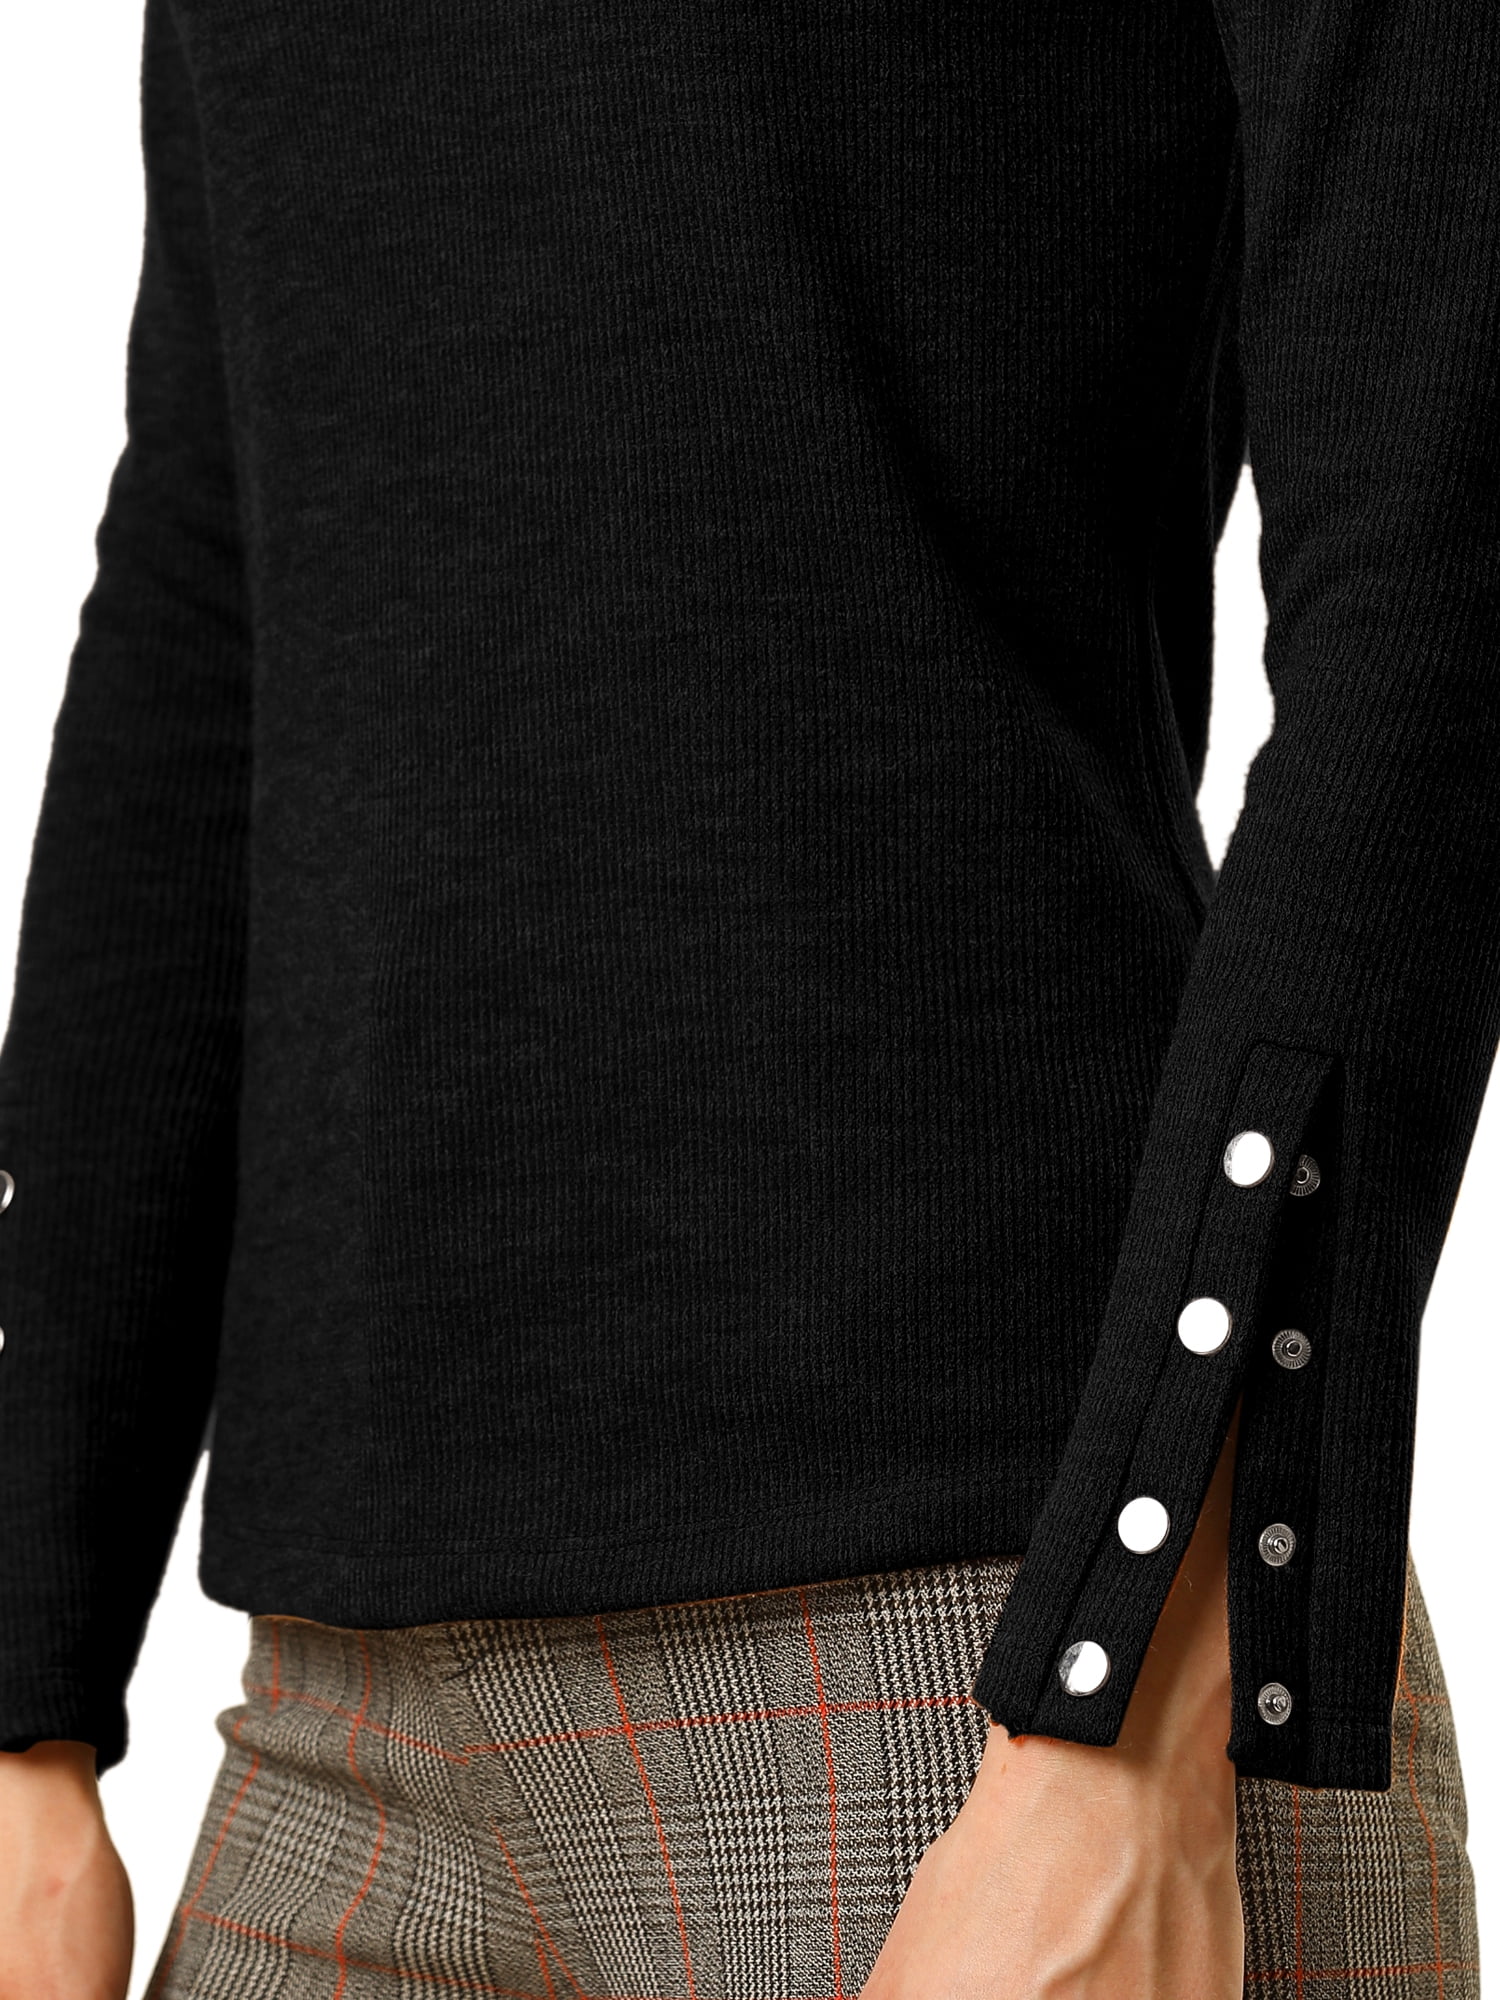 Unique Bargains Women's Mock Neck Long Sleeve Button Cuff Knit Top